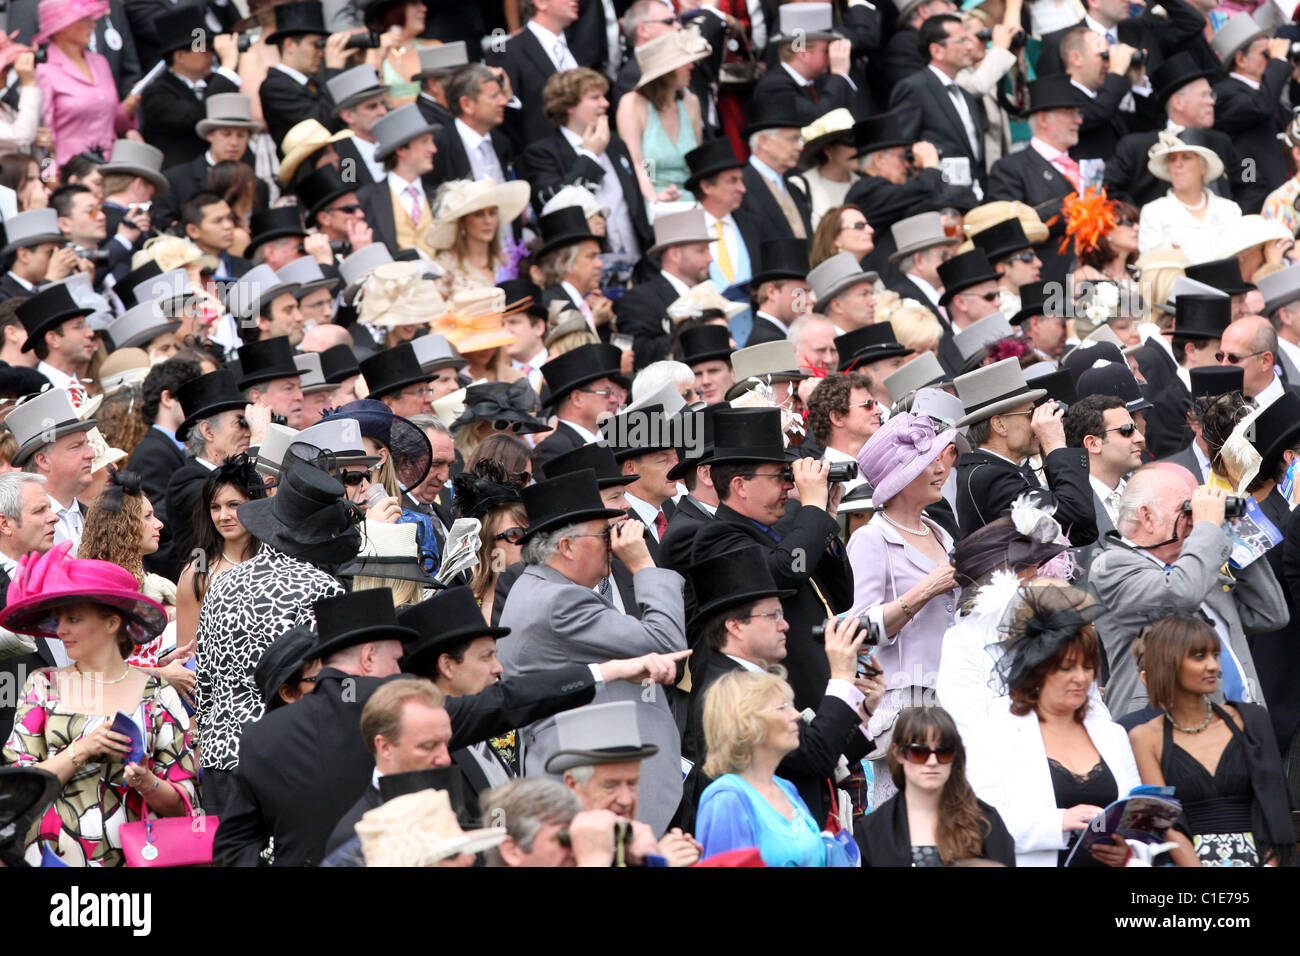 Elegantly dressed people at a horse race, Epsom, United Kingdom Stock Photo